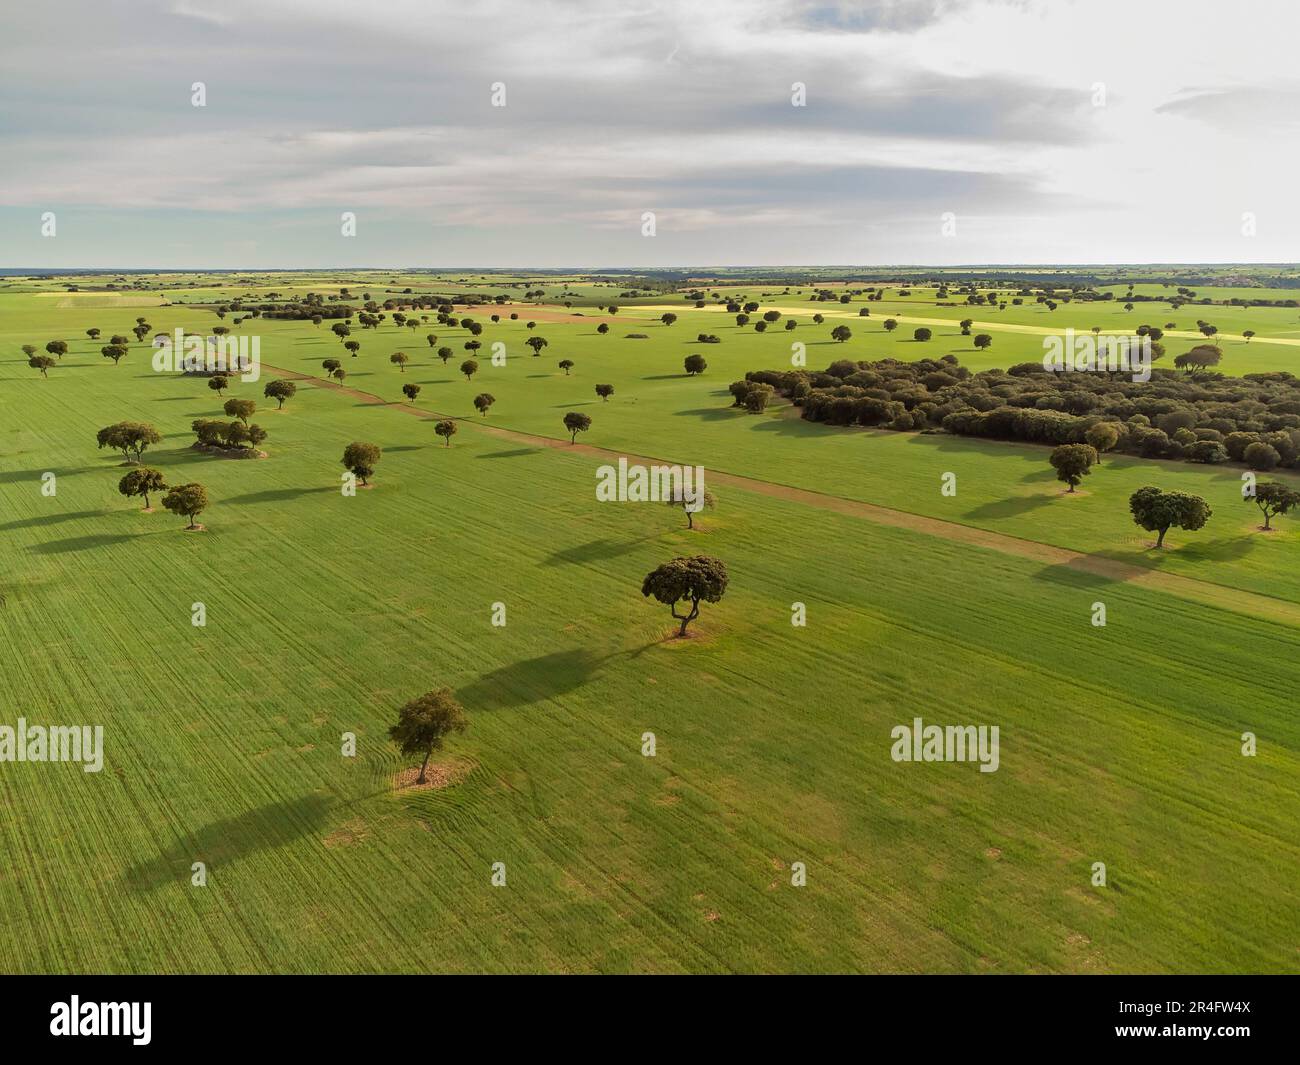 Luftbild riesiger Getreidefelder am Horizont, mit verstreuten Bäumen, aus Sicht der Drohne, horizontal Stockfoto